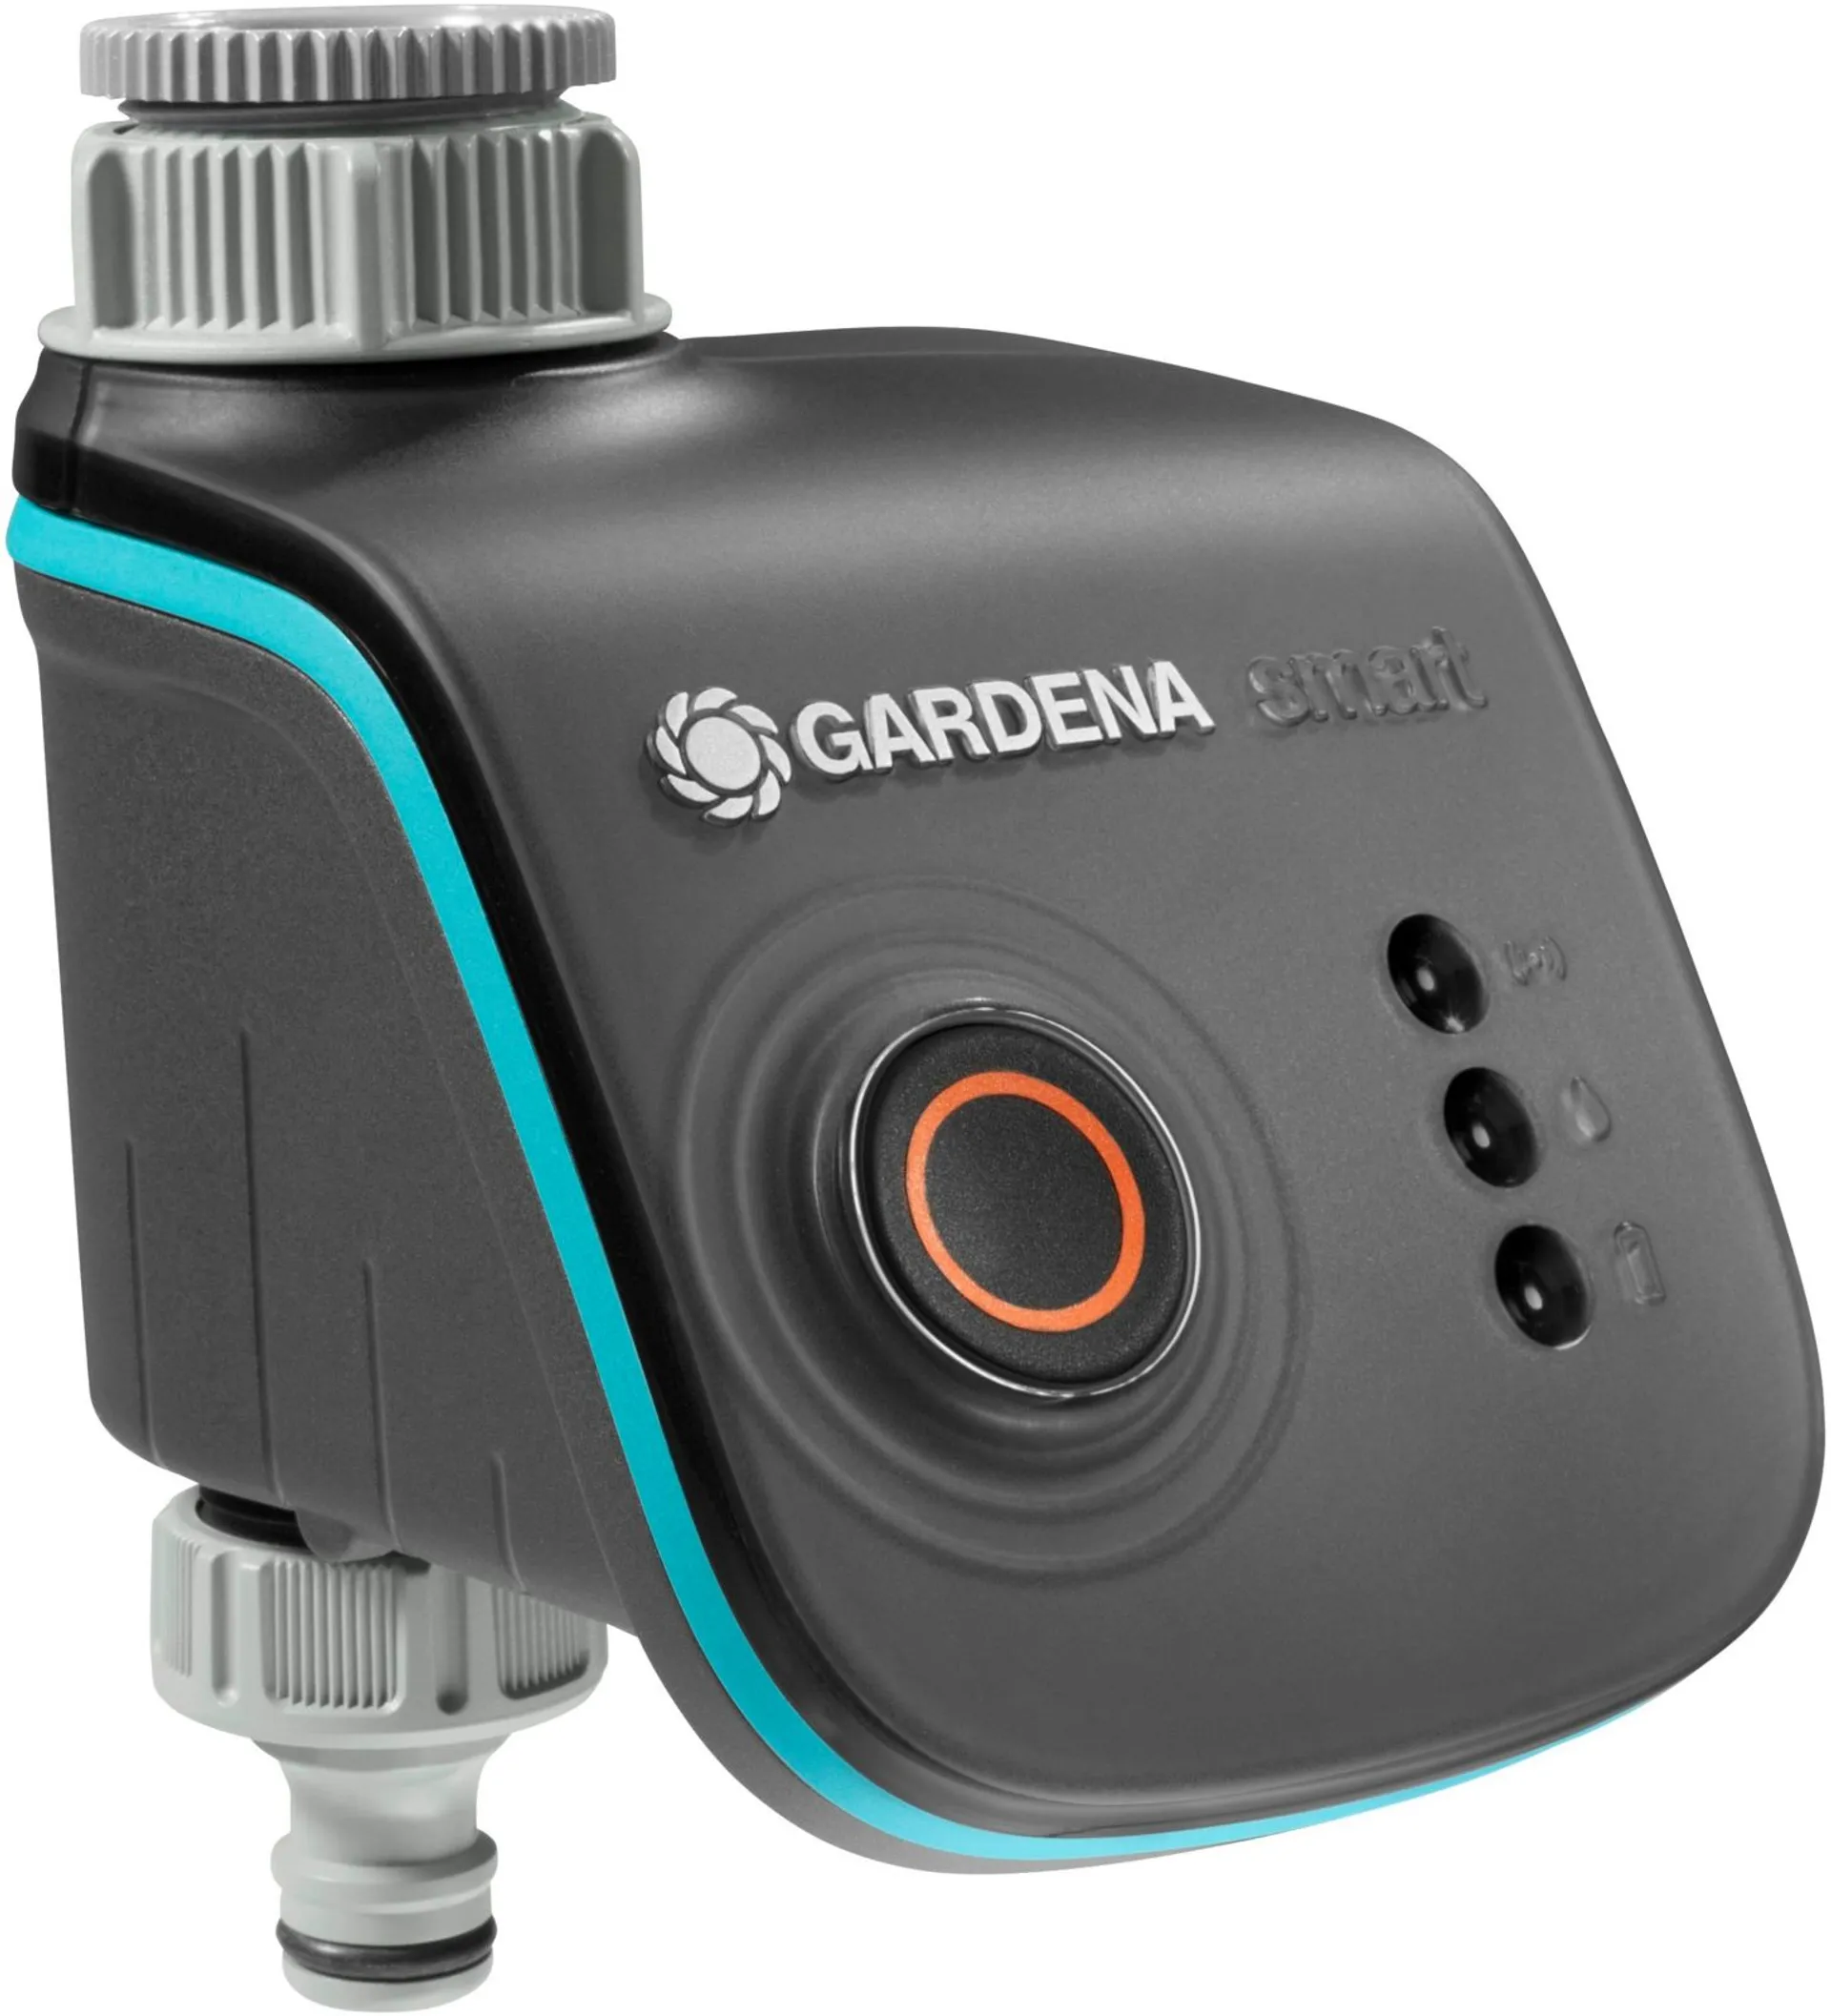 Gardena Smart Water Control, automaattiseen kastelun ohjaamiseen - 1